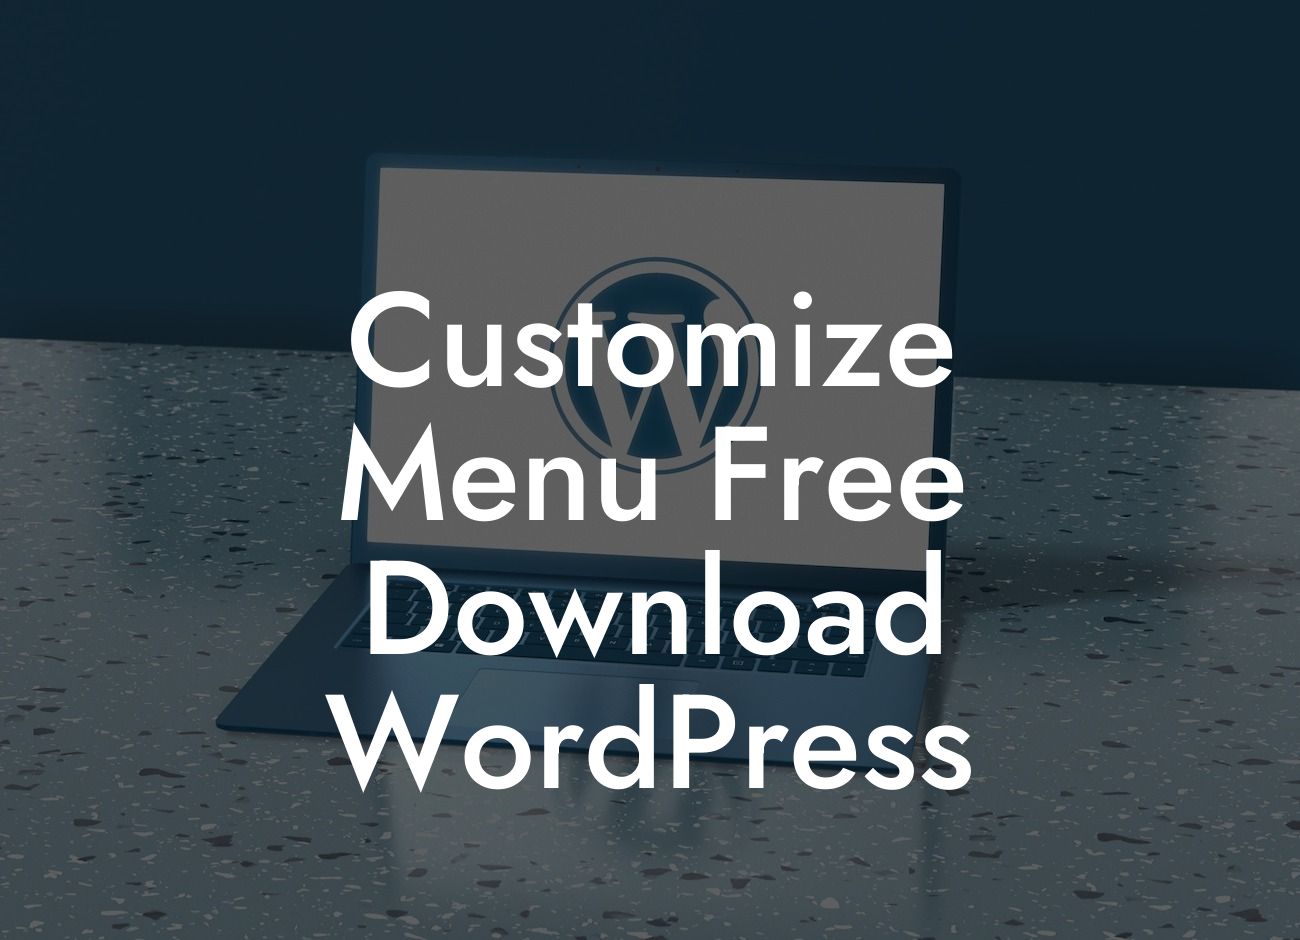 Customize Menu Free Download WordPress